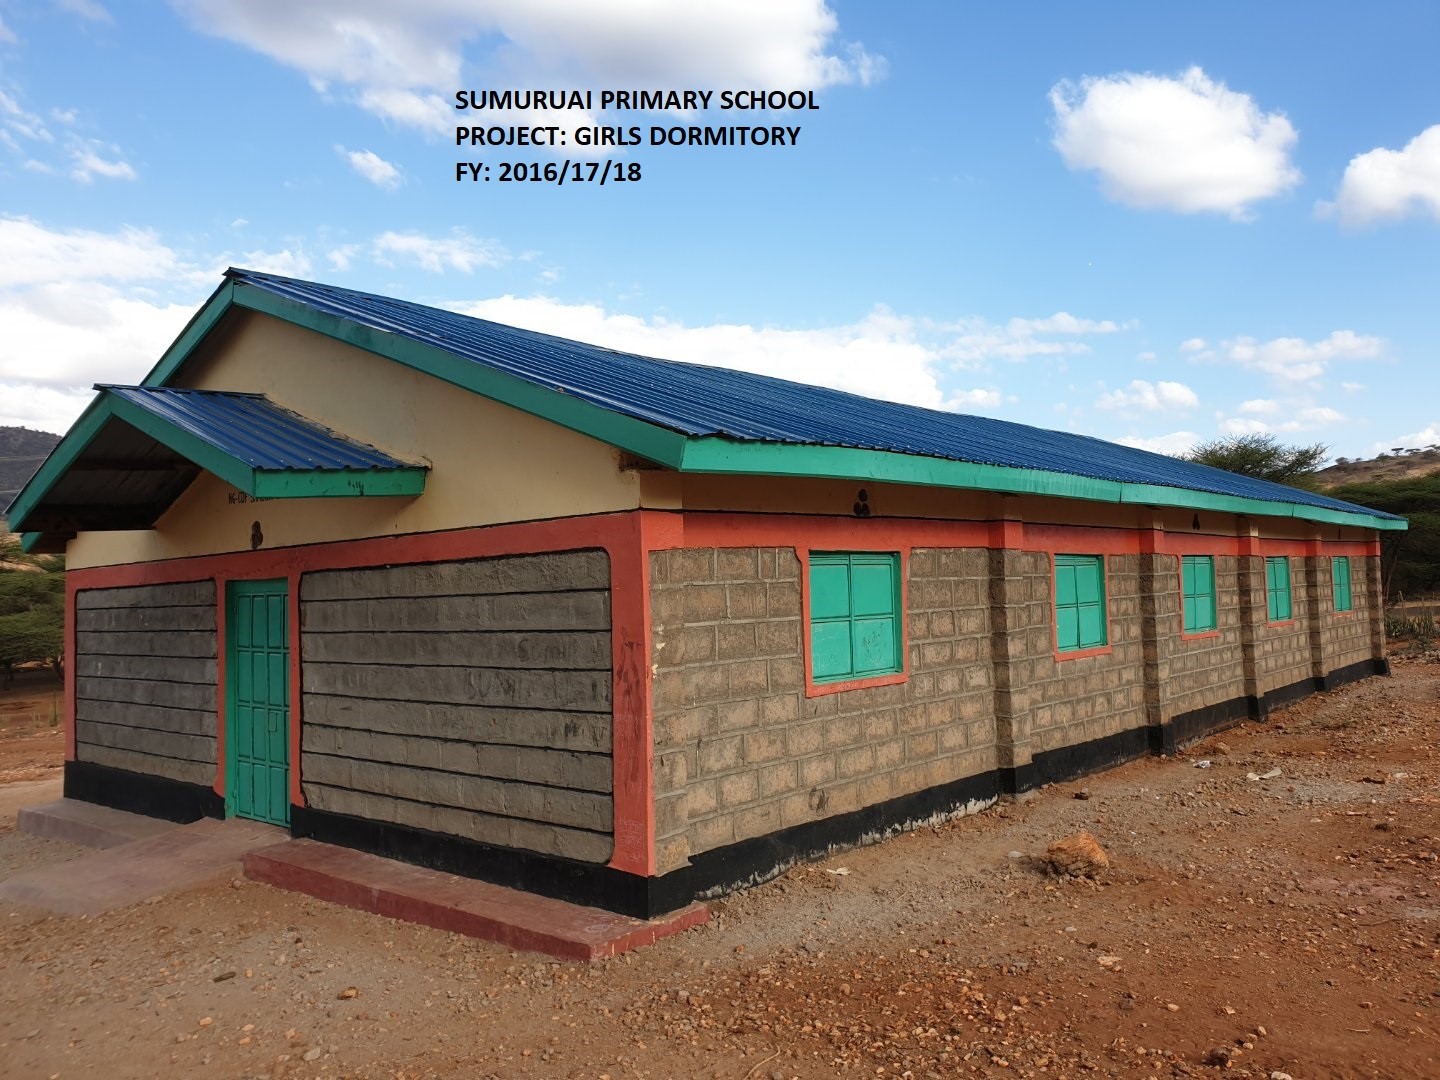 https://samburu-north.ngcdf.go.ke/wp-content/uploads/2021/08/Sumuruai-Primary-School-Girls-Dormitory_2.jpg